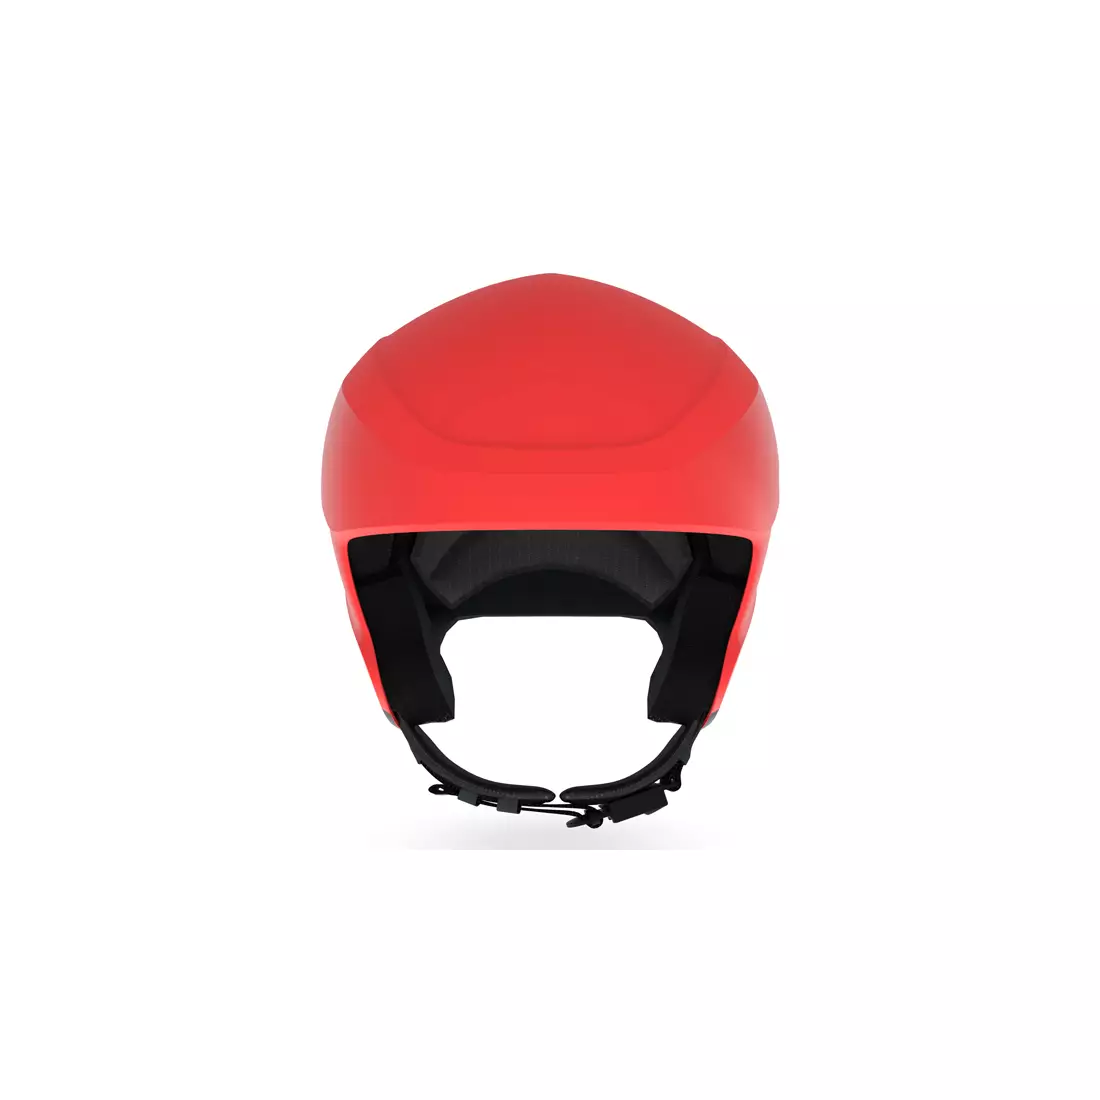 Ski helmet GIRO AVANCE SPHERICAL MIPS matte red carbon